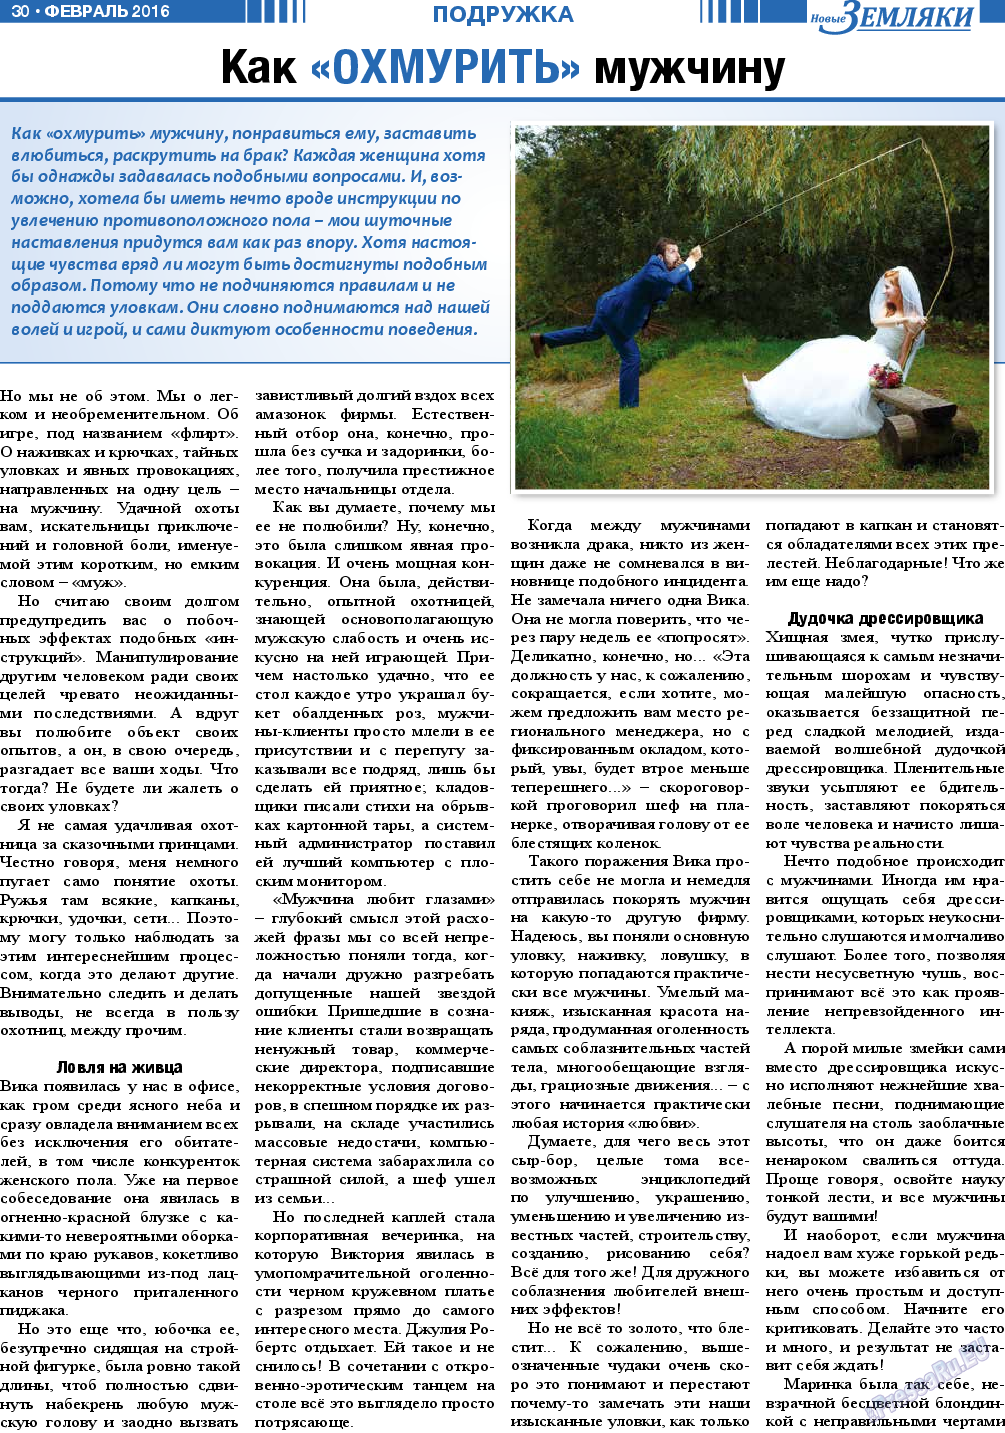 Новые Земляки, газета. 2016 №2 стр.30